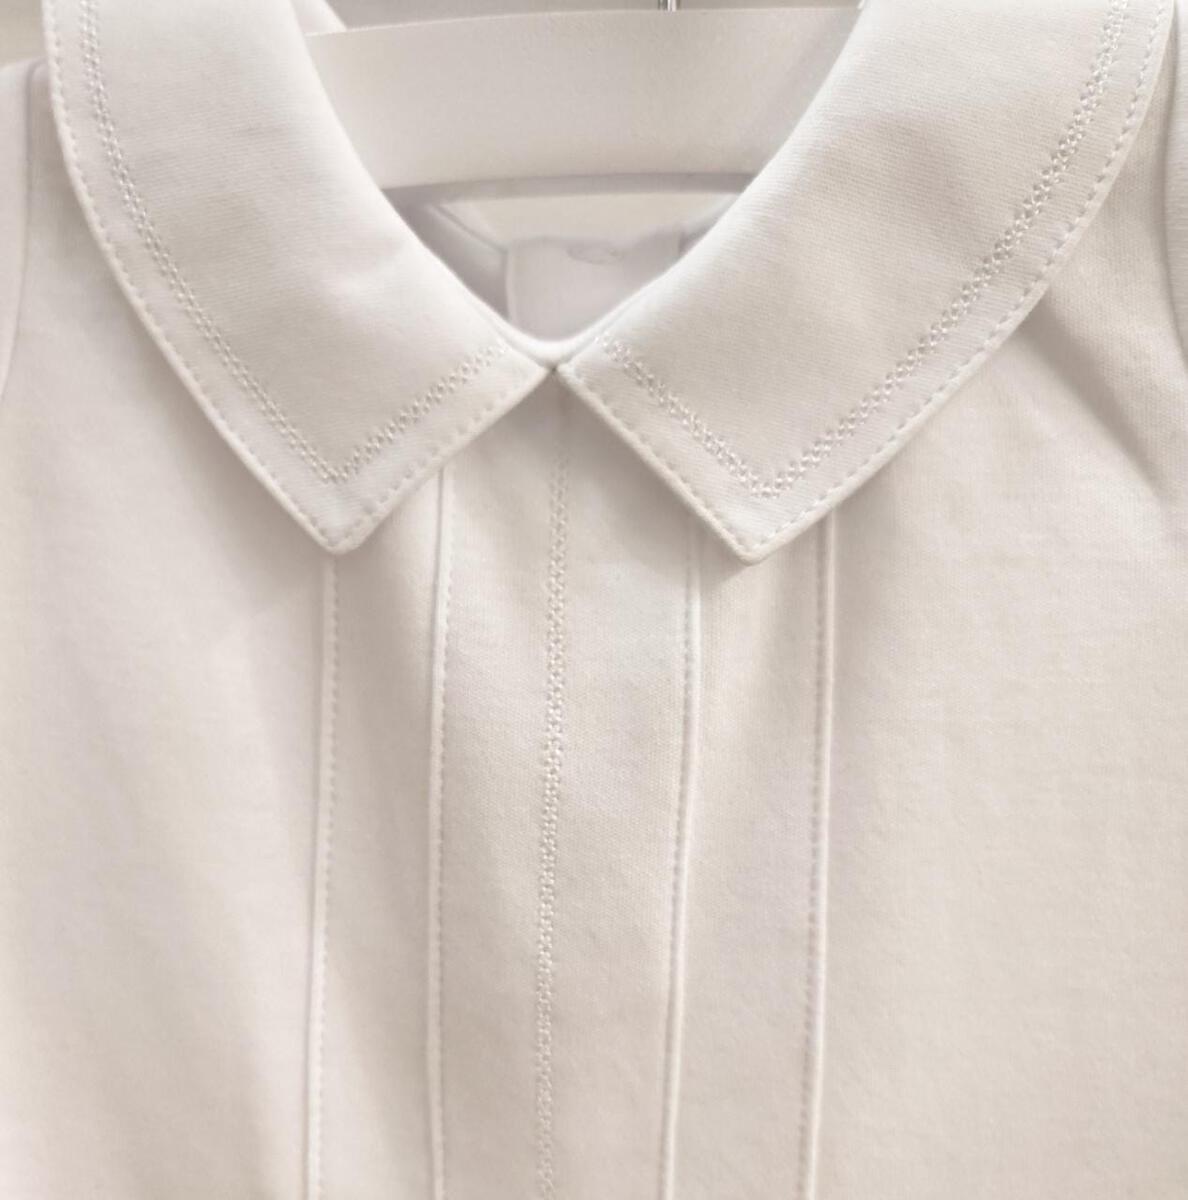 Joseph Embroidered Bodysuit Short Sleeve - White